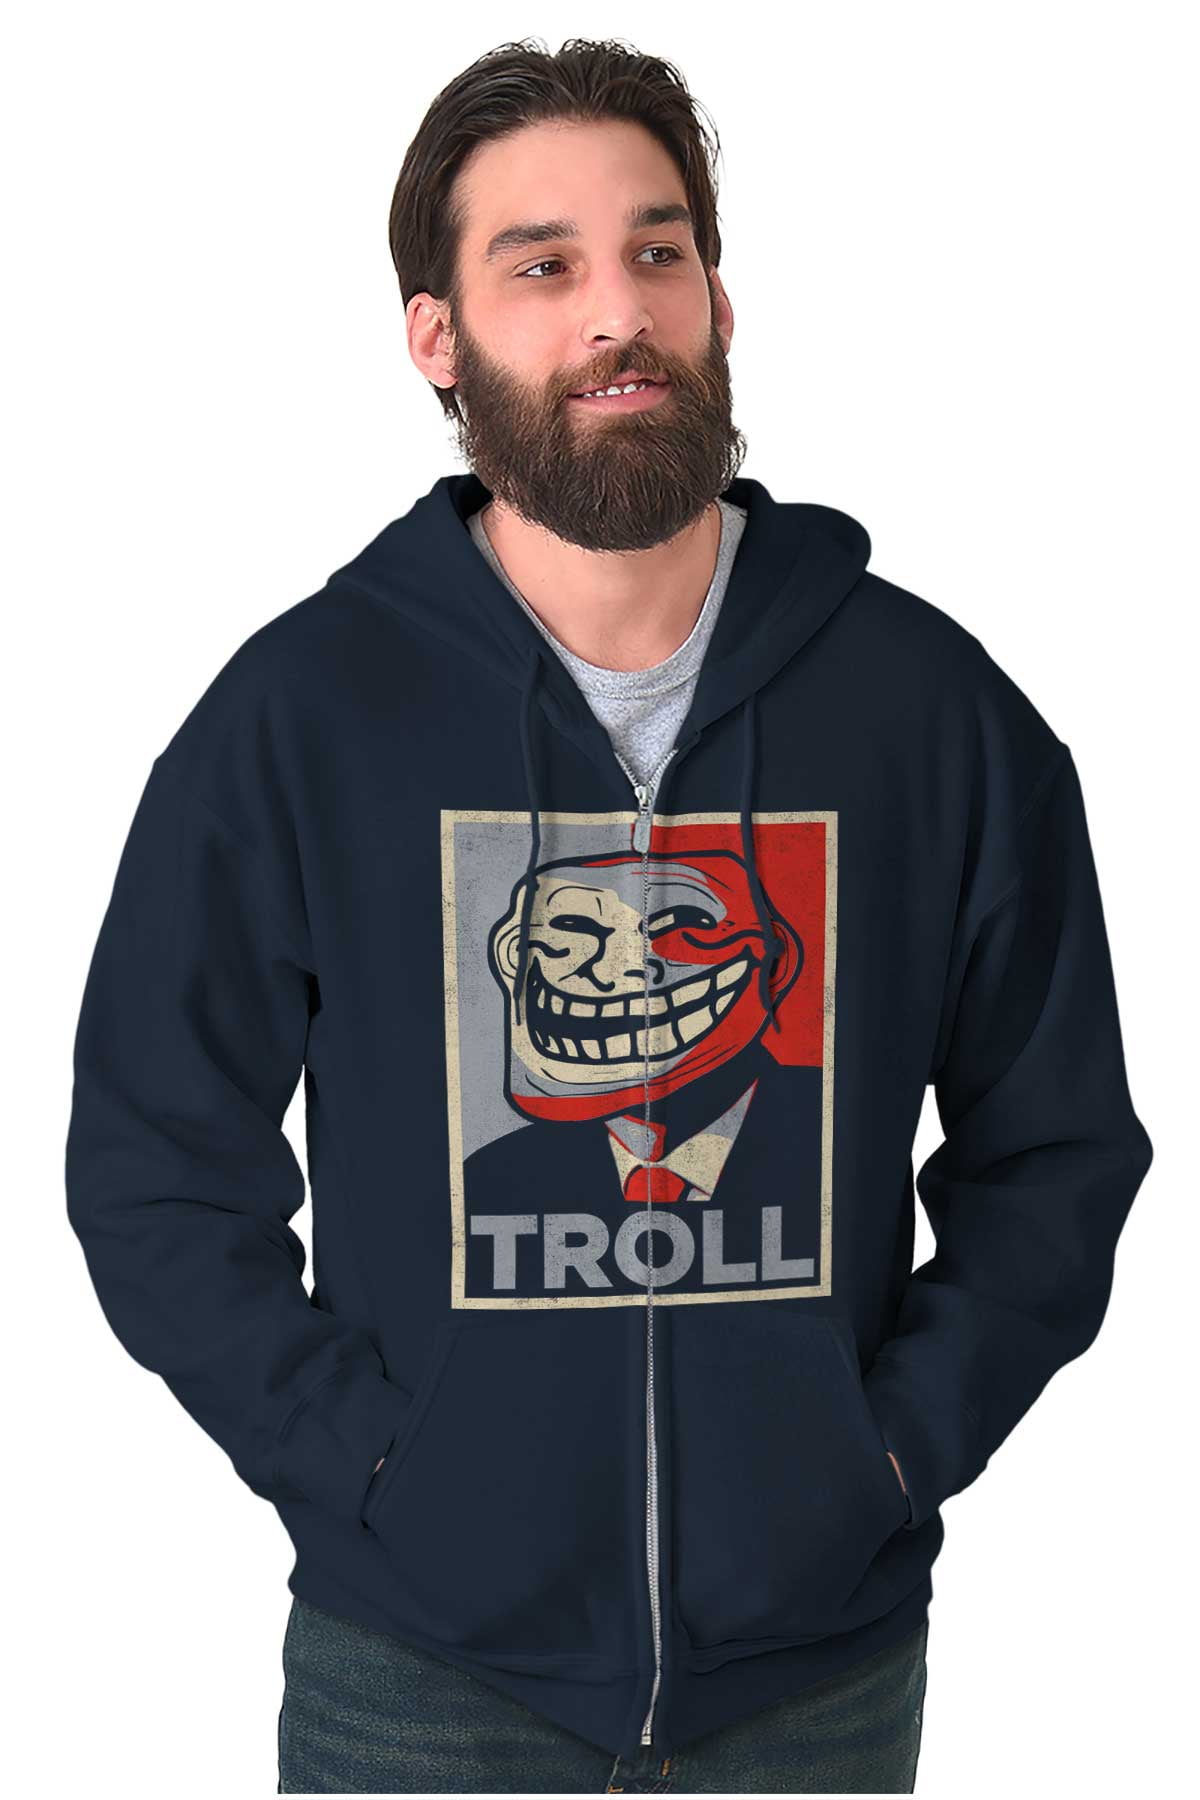 Trollface, United Troll Army